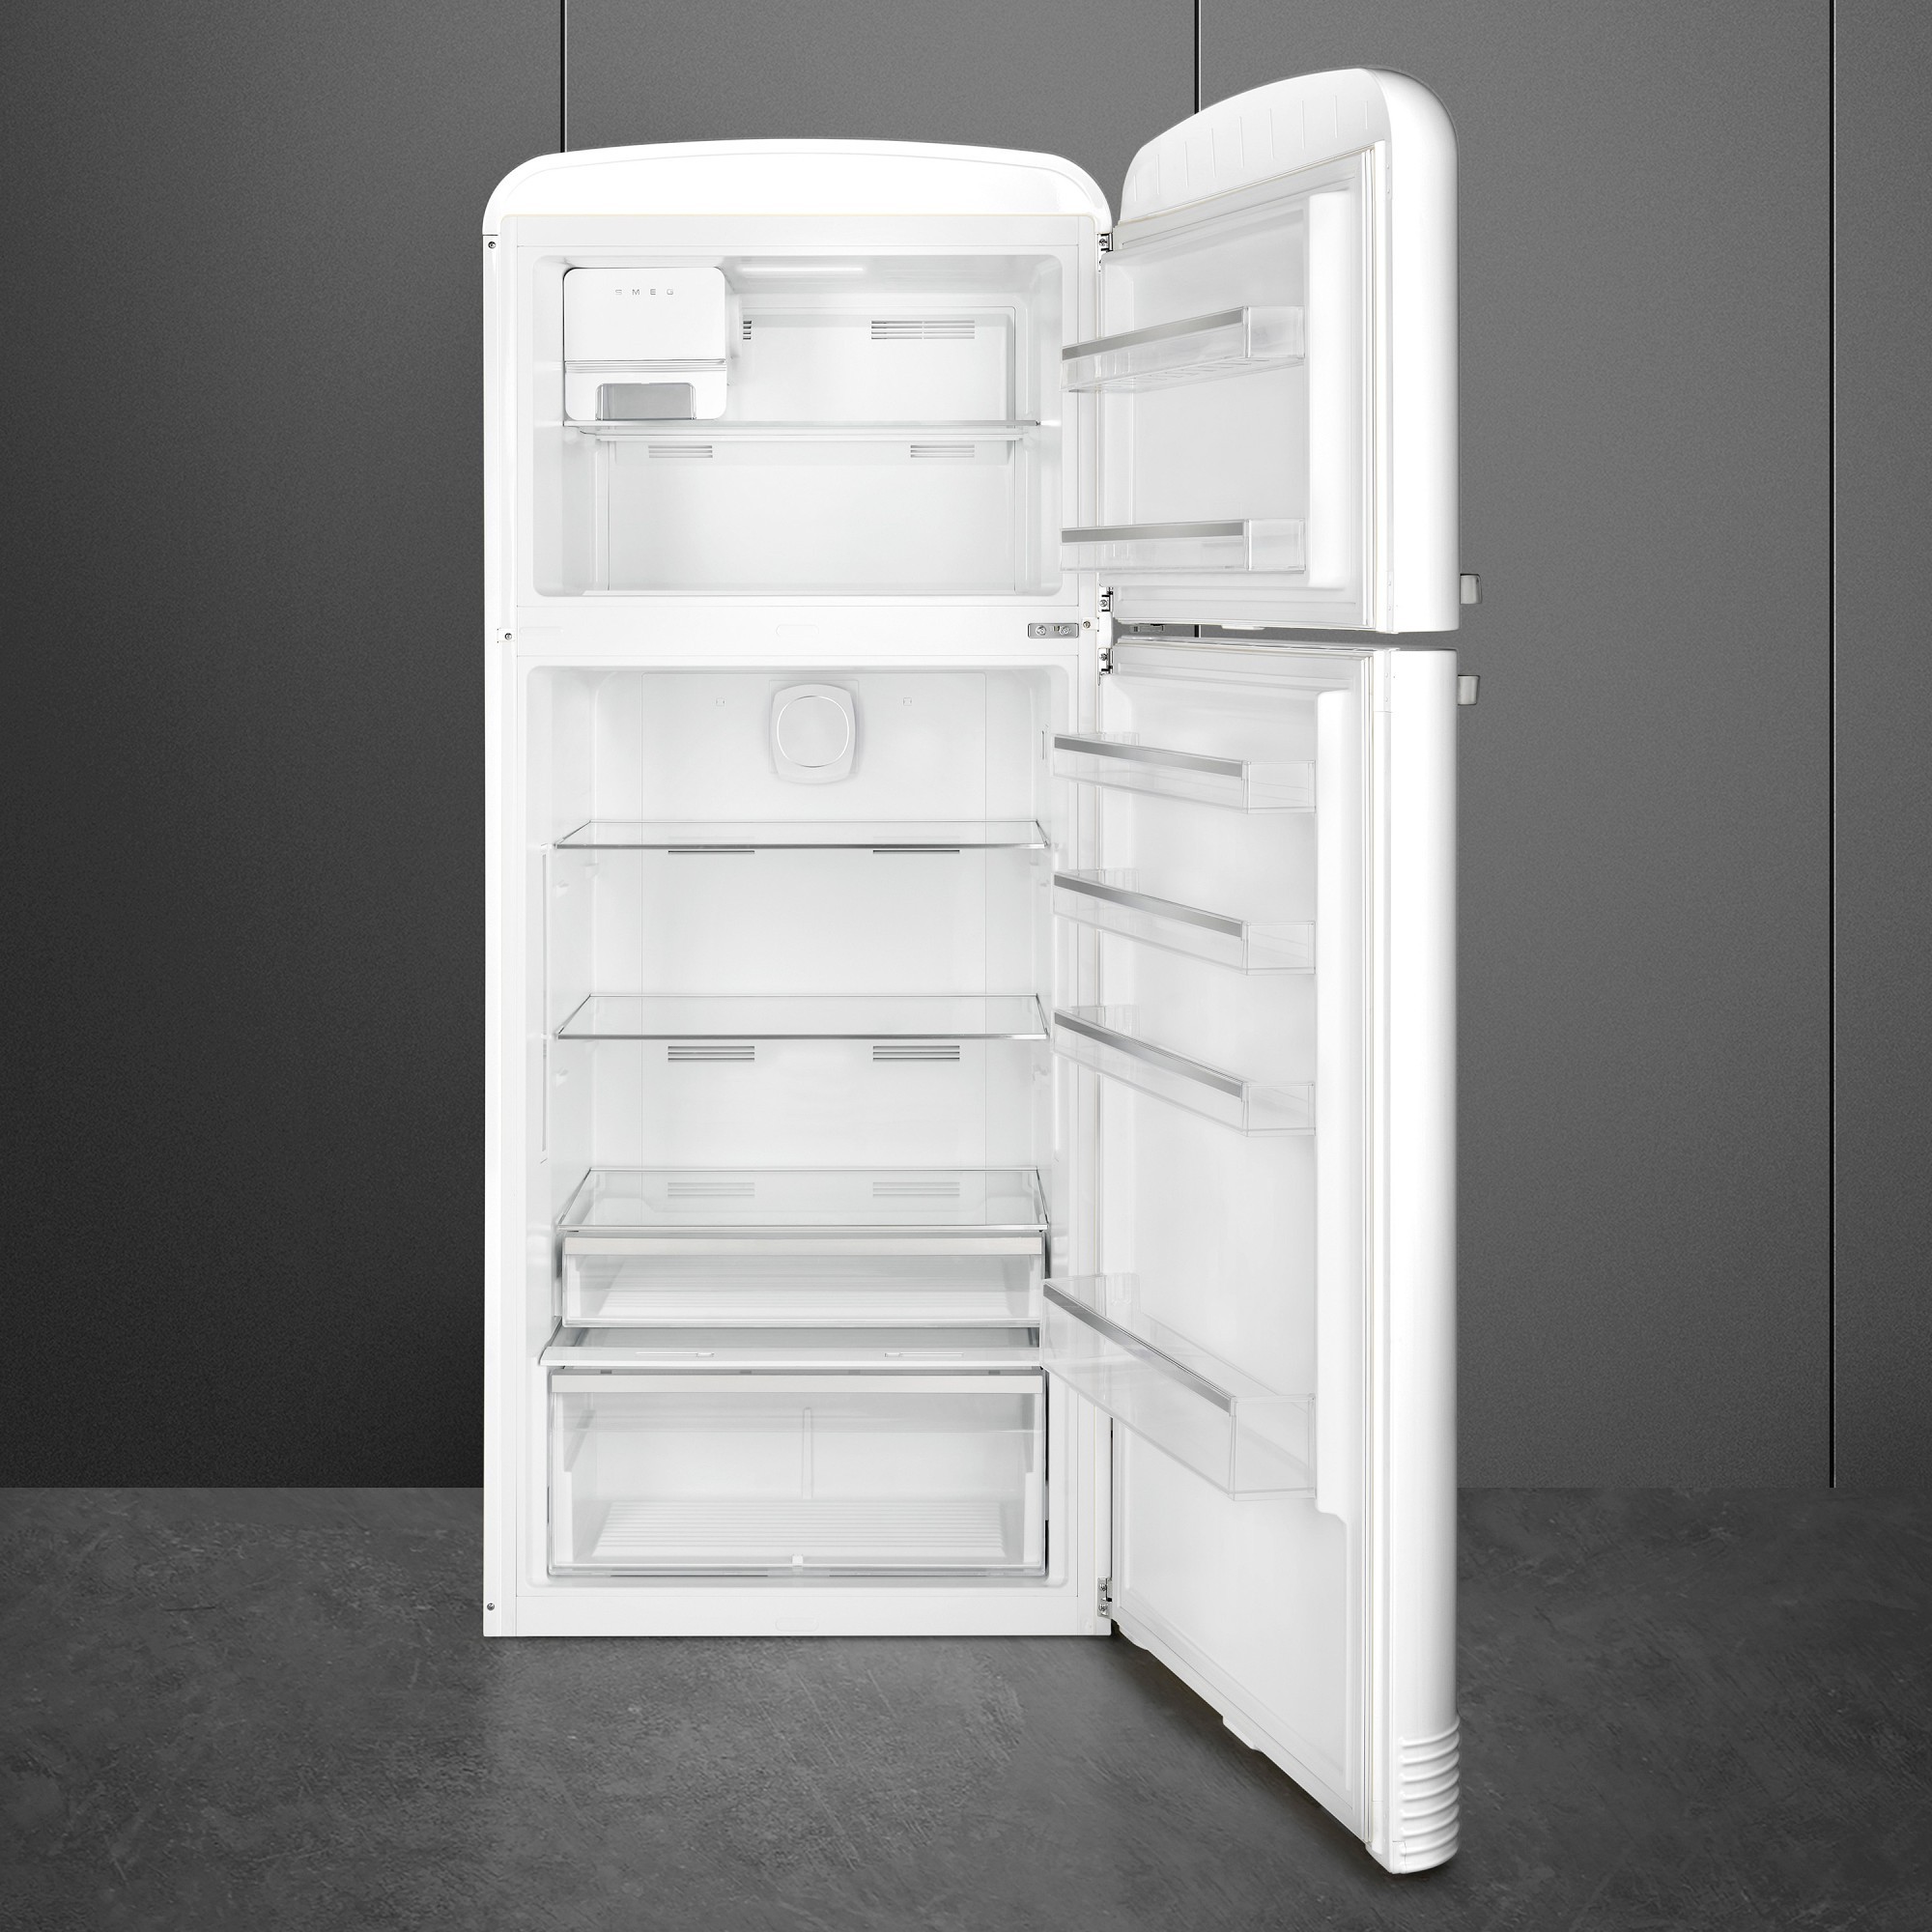 SMEG FAB 50 Refrigerator interior